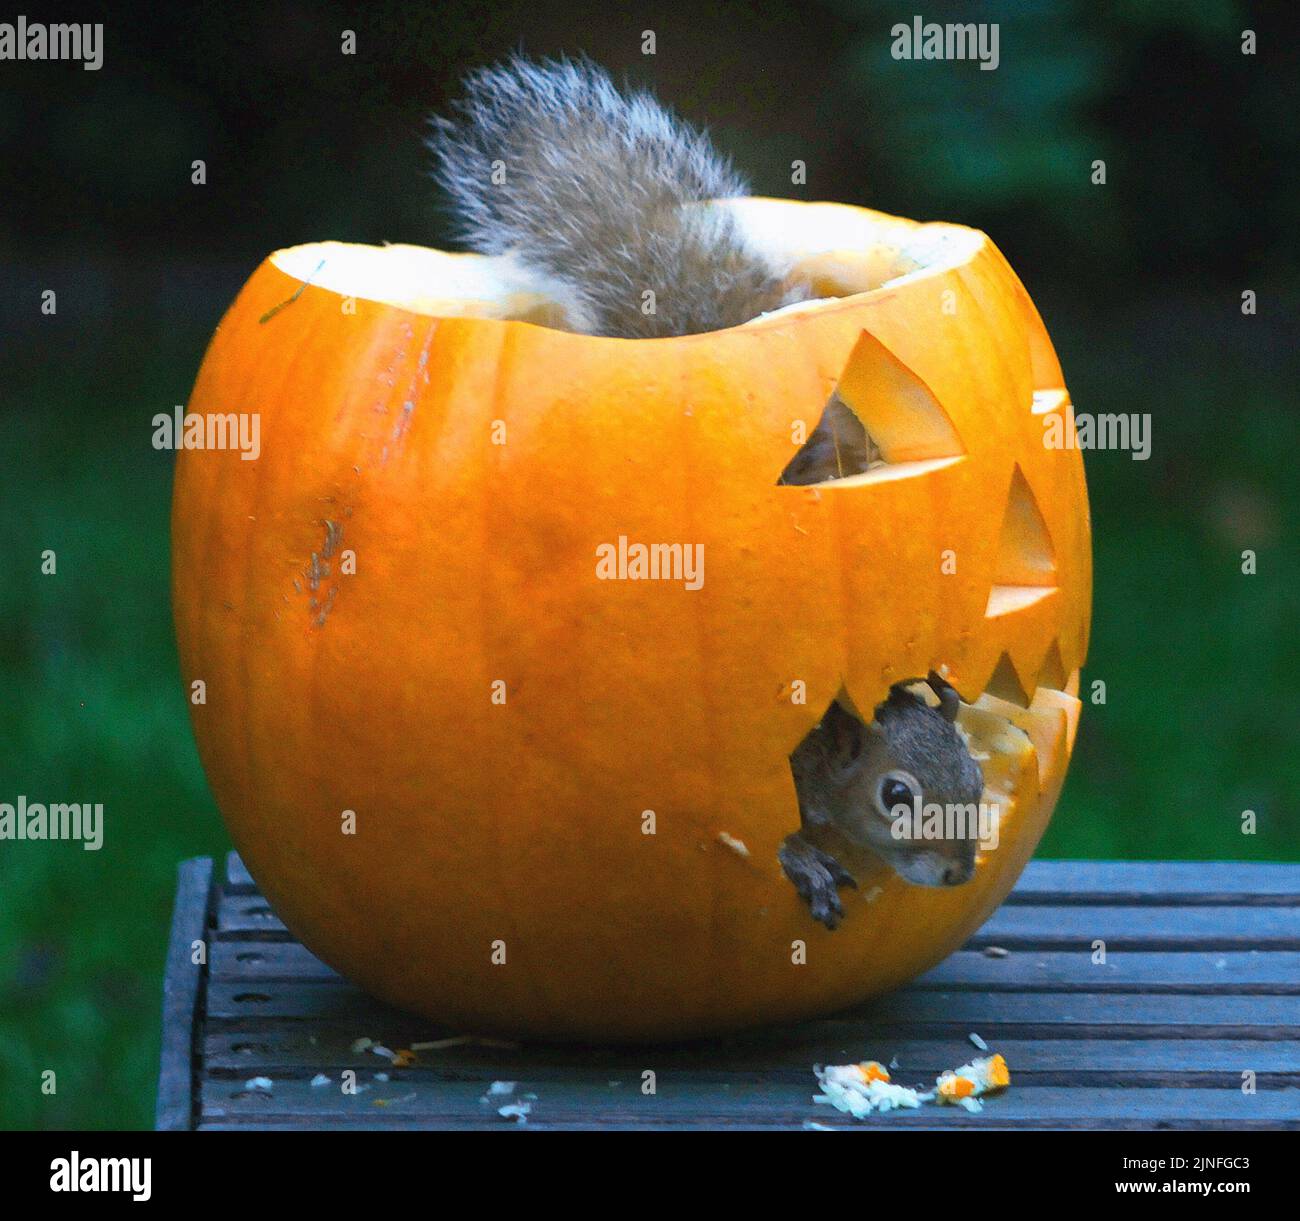 Molly stellt immer einen Kürbis aus, um sich dem Geist von Halloween anzuschließen, aber dieses Jahr fand sie ihn nach nur einem Tag zerstört, also ging sie zu ihren Gemüsehändler und kaufte einen Ersatz. Als sie es in den Garten brachte, war sie erstaunt, den Schuldigen zu finden, ein graues Eichhörnchen, das sich an ihrem Kürbis tupfte. Molly (31) sagte: „Ich konnte es nicht glauben.“ kaum hatte ich den zweiten Kürbis herausgebracht, begann das Eichhörnchen zu zerstören. Der kleine Schädling kaute an dem Mund, den ich herausgeschnitten hatte, und hatte sich in kürzester Zeit direkt im Innern den Weg gegraben. Dann knapfte er ewig weg. '' Ich füttere die Vögel und Eichhörnchen Nüsse BU Stockfoto